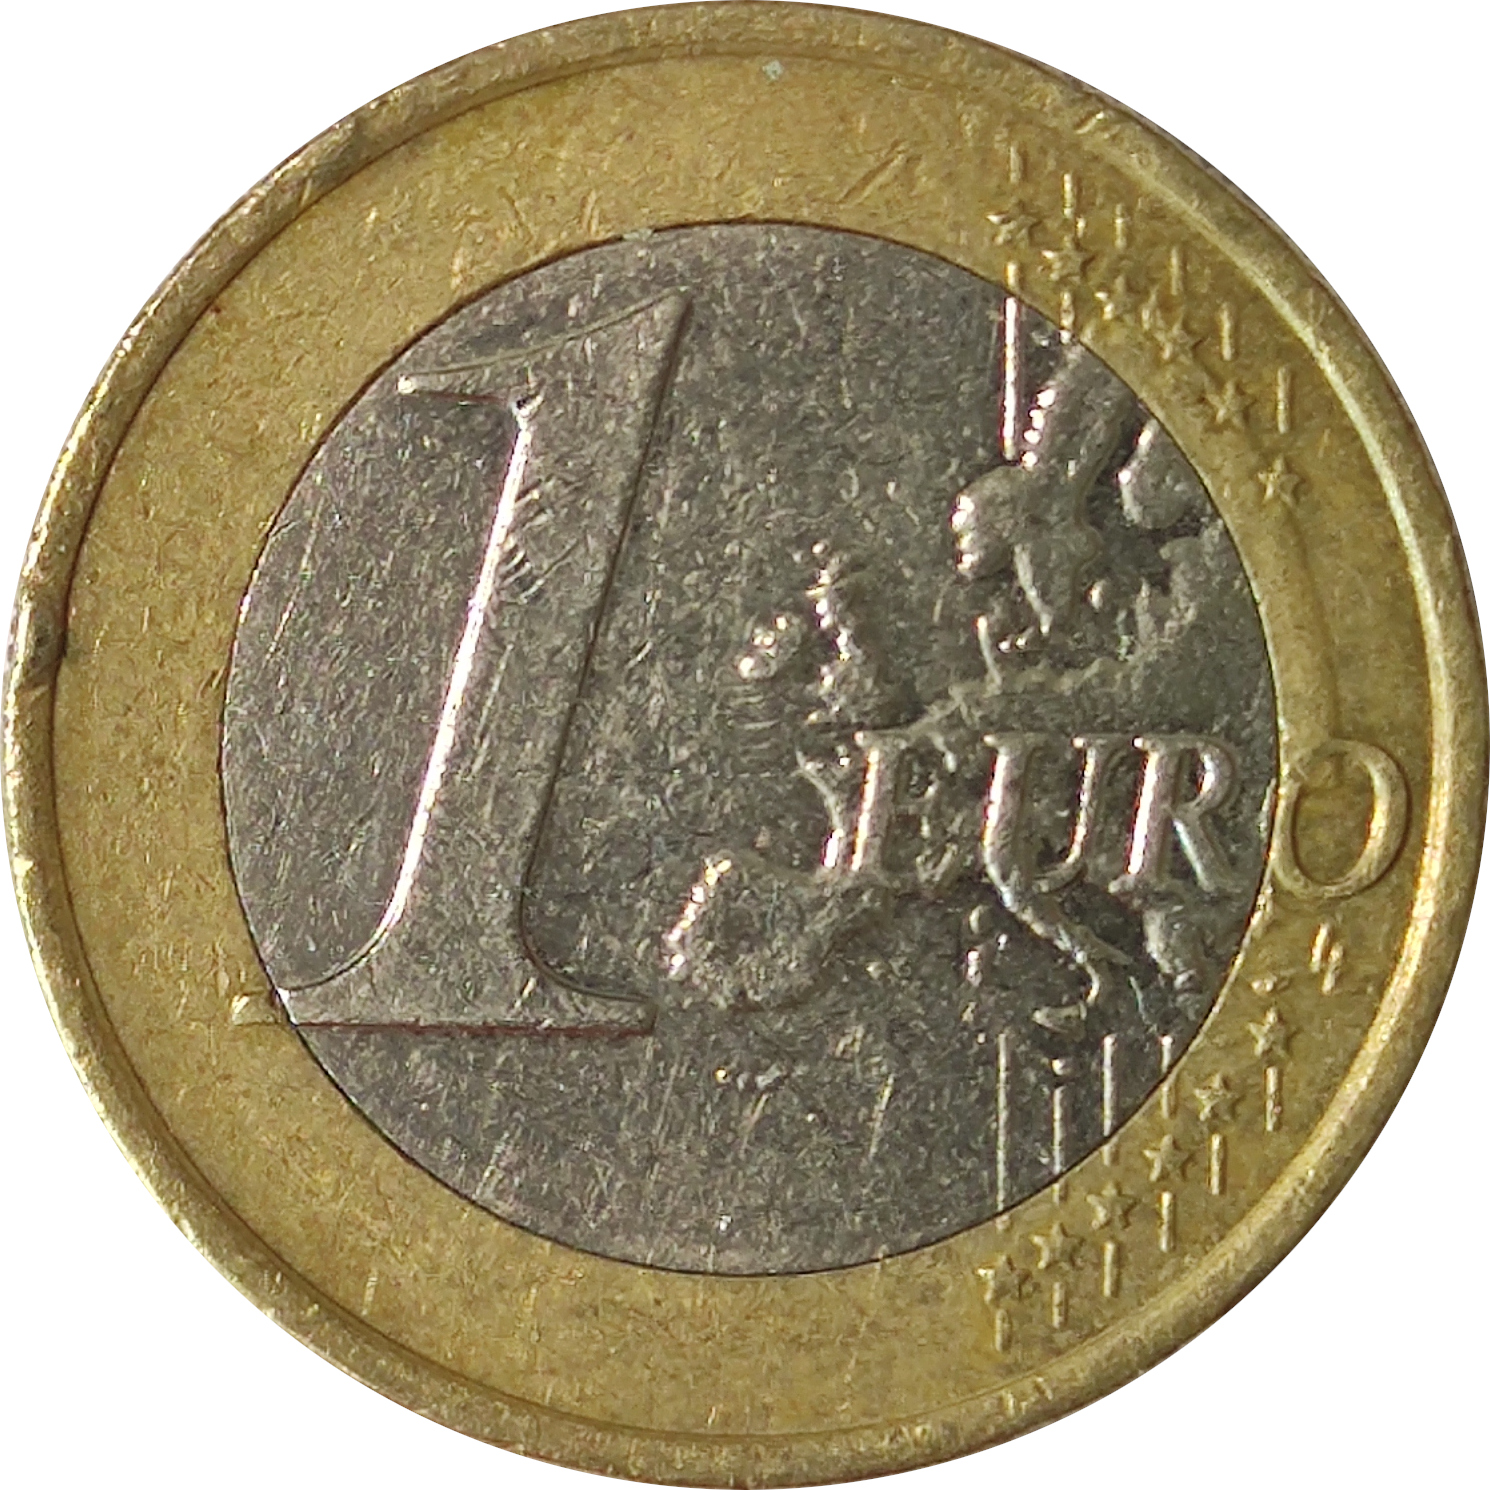 1 euro - Vytis